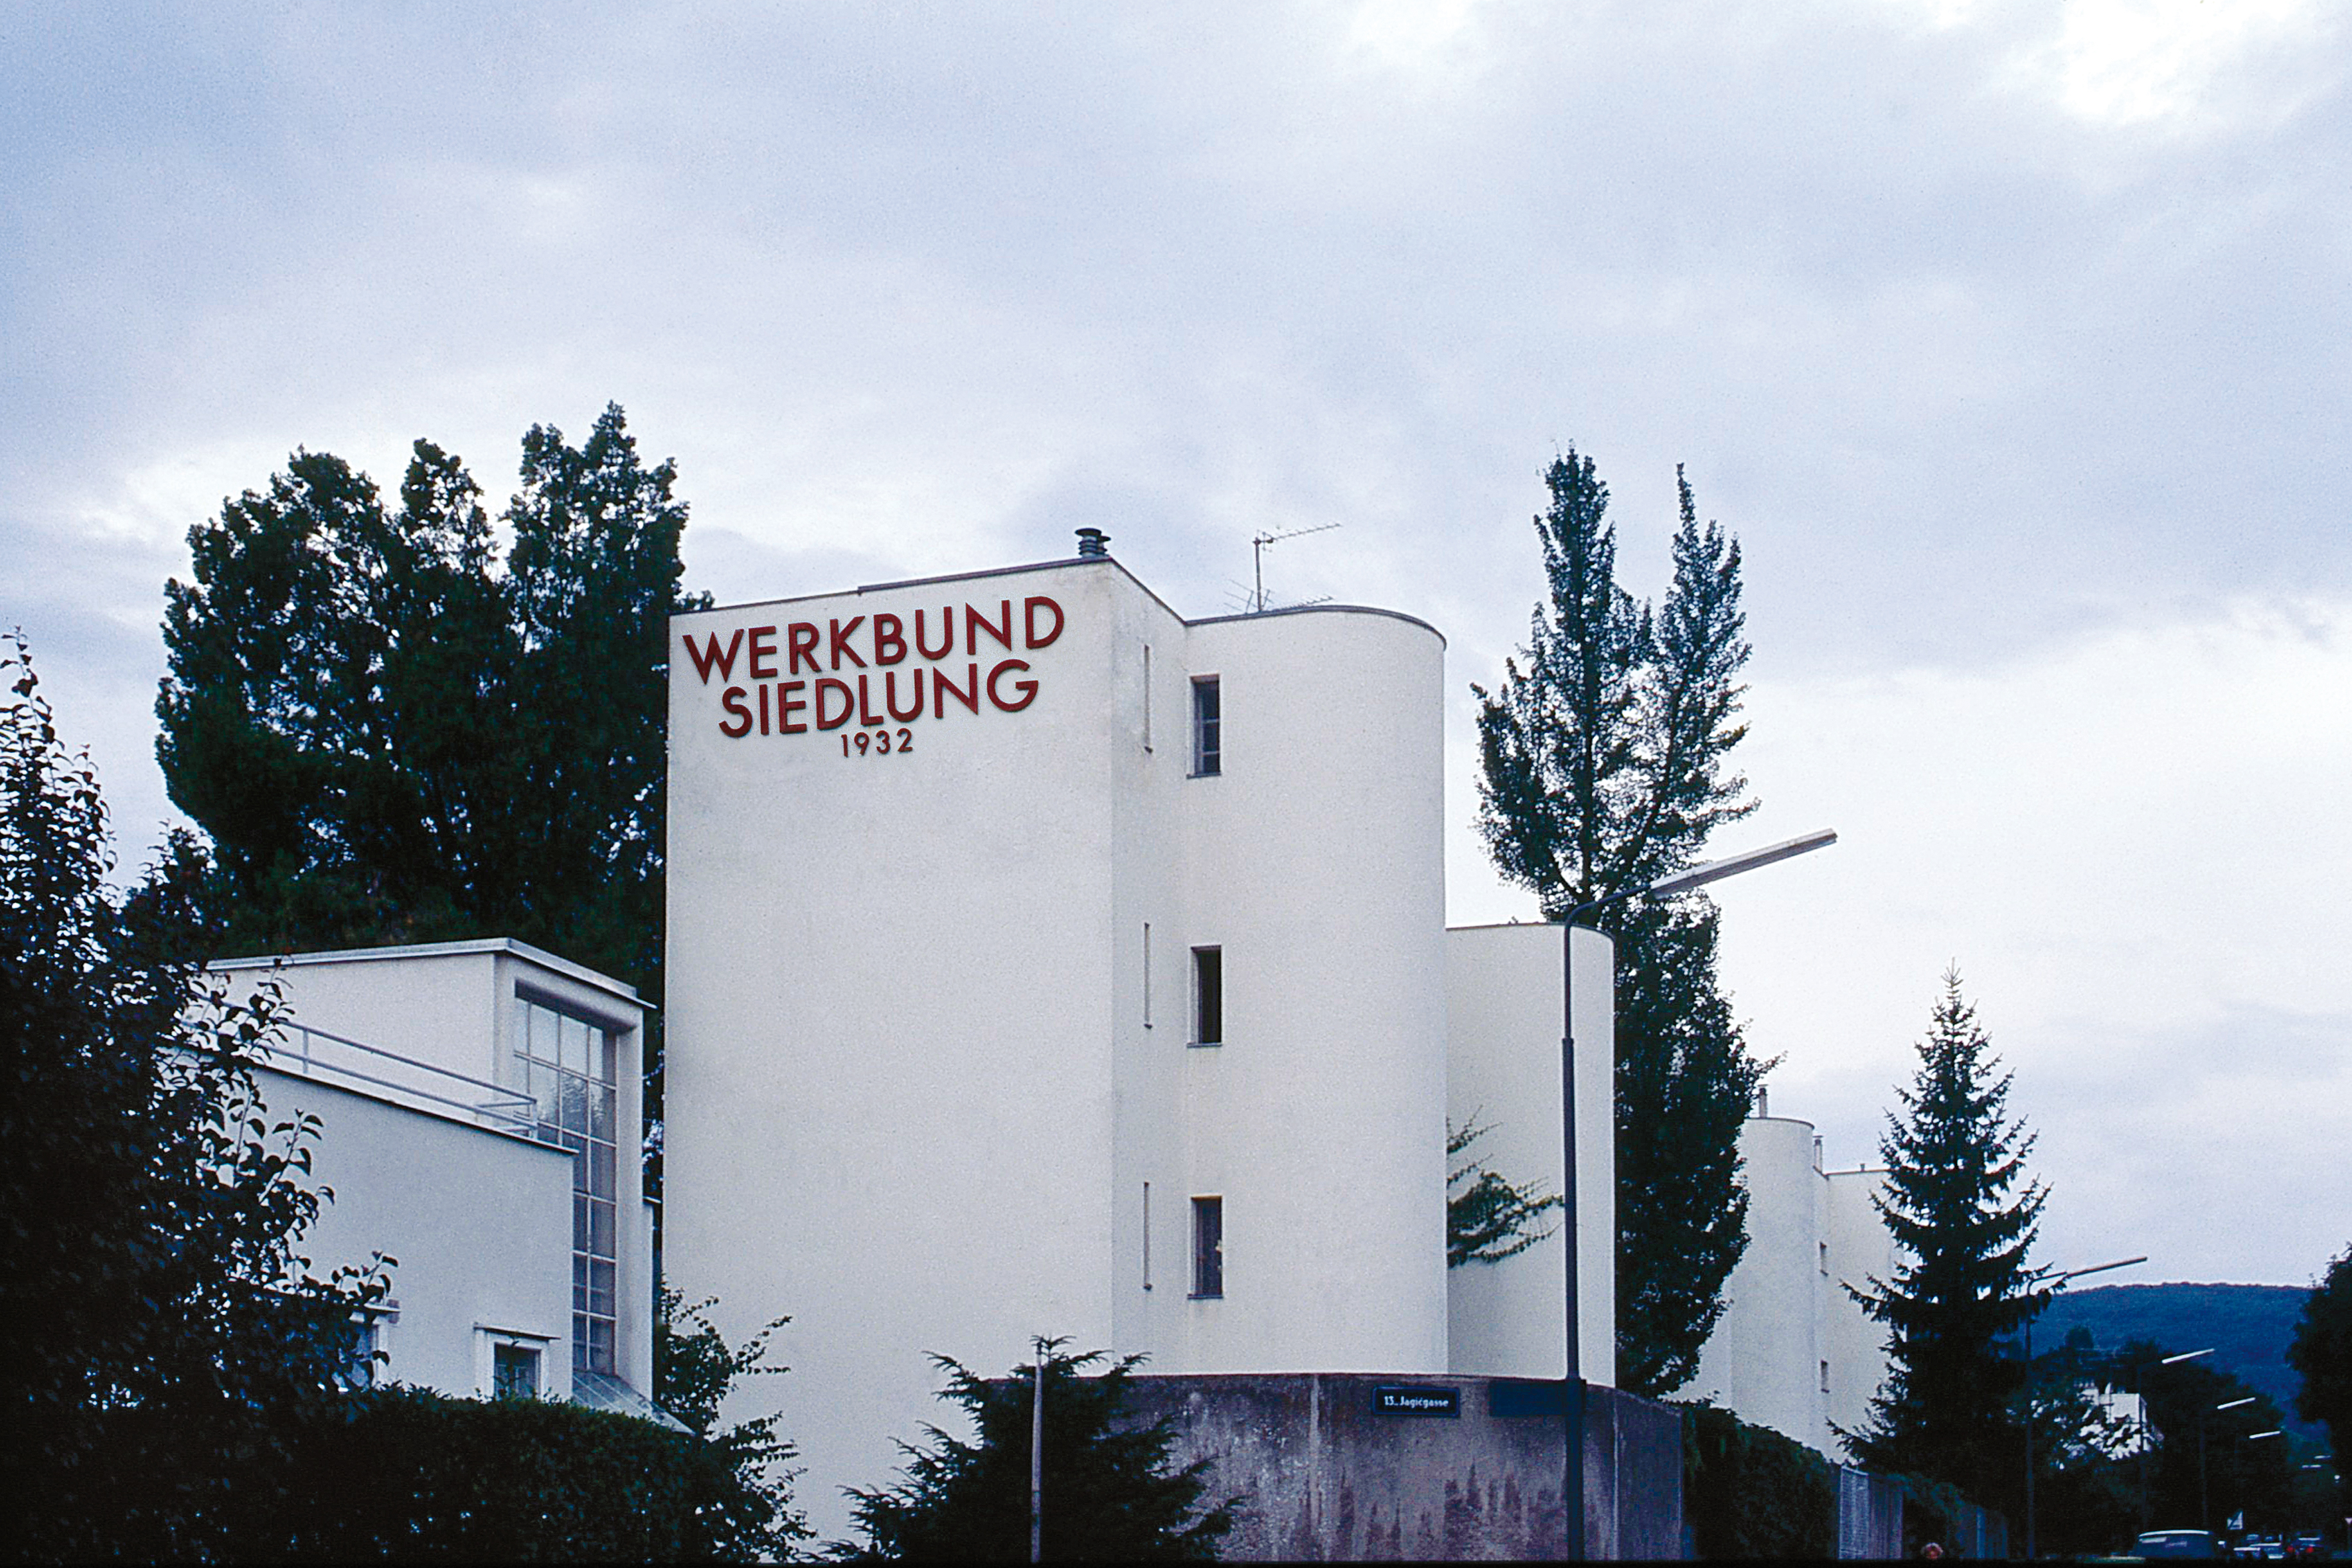 Werkbundsiedlung Vienna 1932